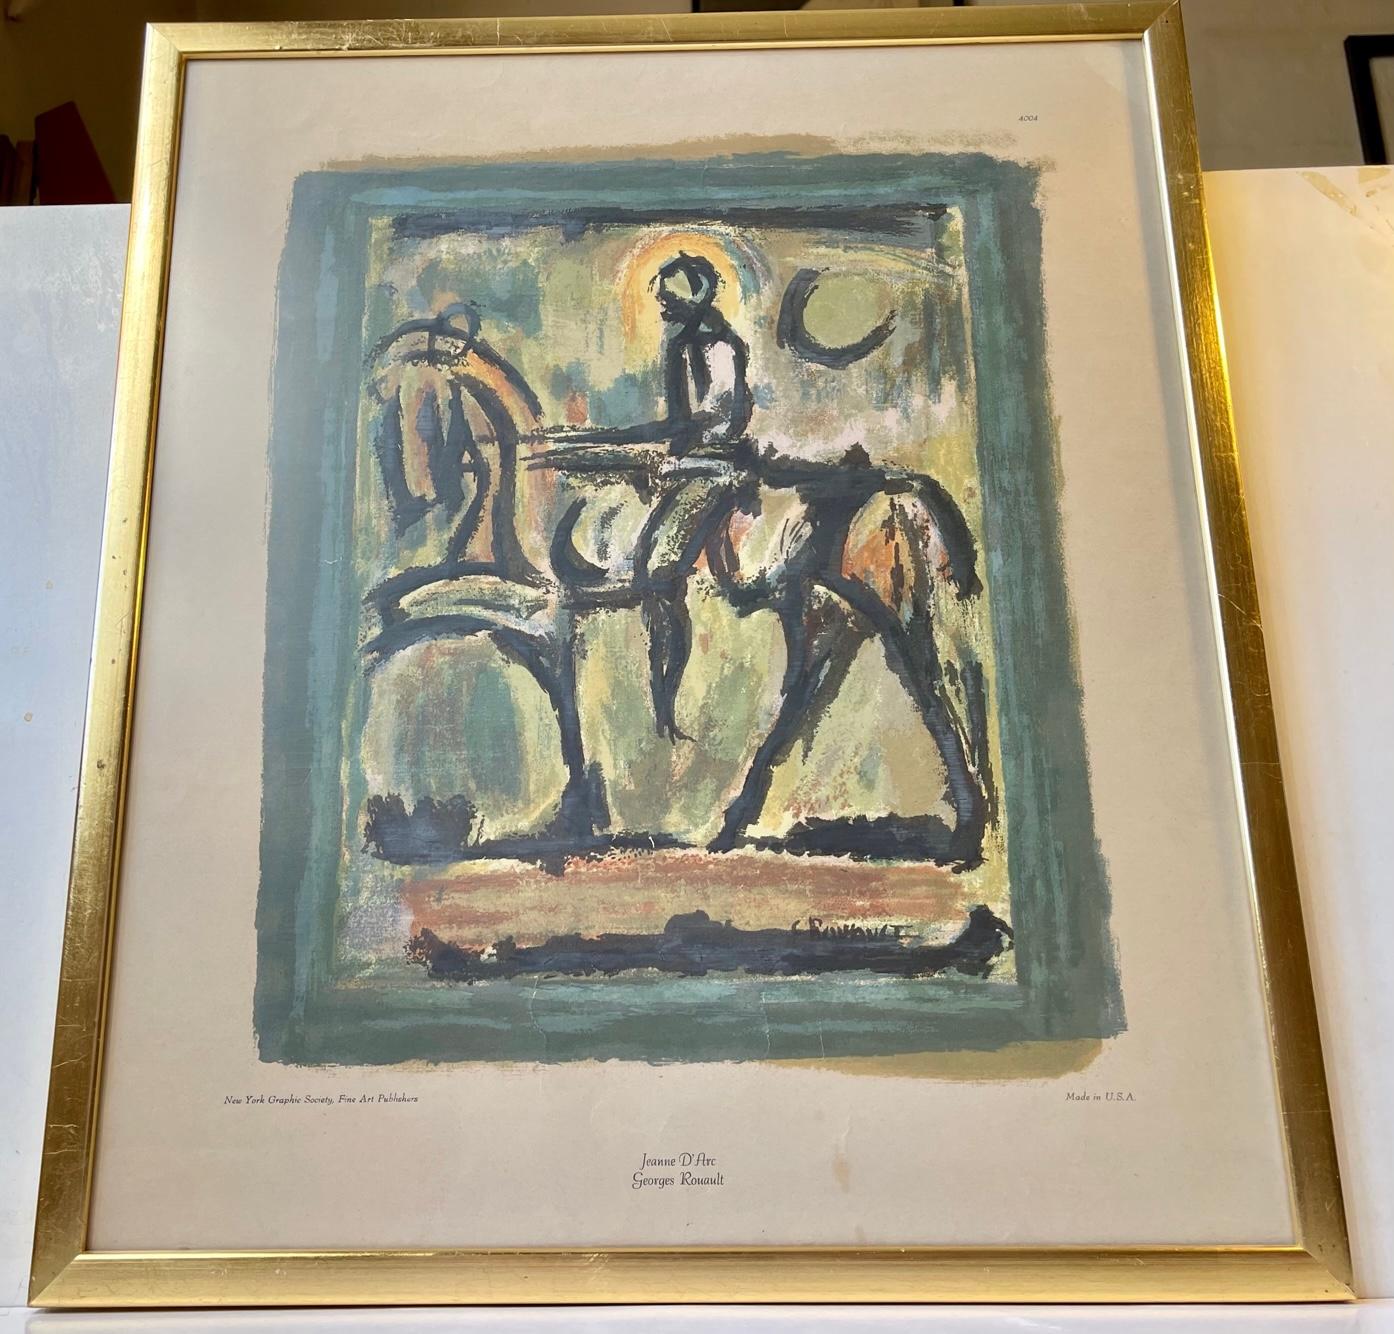 Jeanne D' Arc zu Pferd von Georges Rouault. Farbdruck Nummer 4004, herausgegeben von der New York Graphic Society, Fine Art Publishers, um 1940. Es ist in einem goldfarbenen Rahmen mit Glasfront montiert. Maße: 59x51x2 cm (gerahmt).